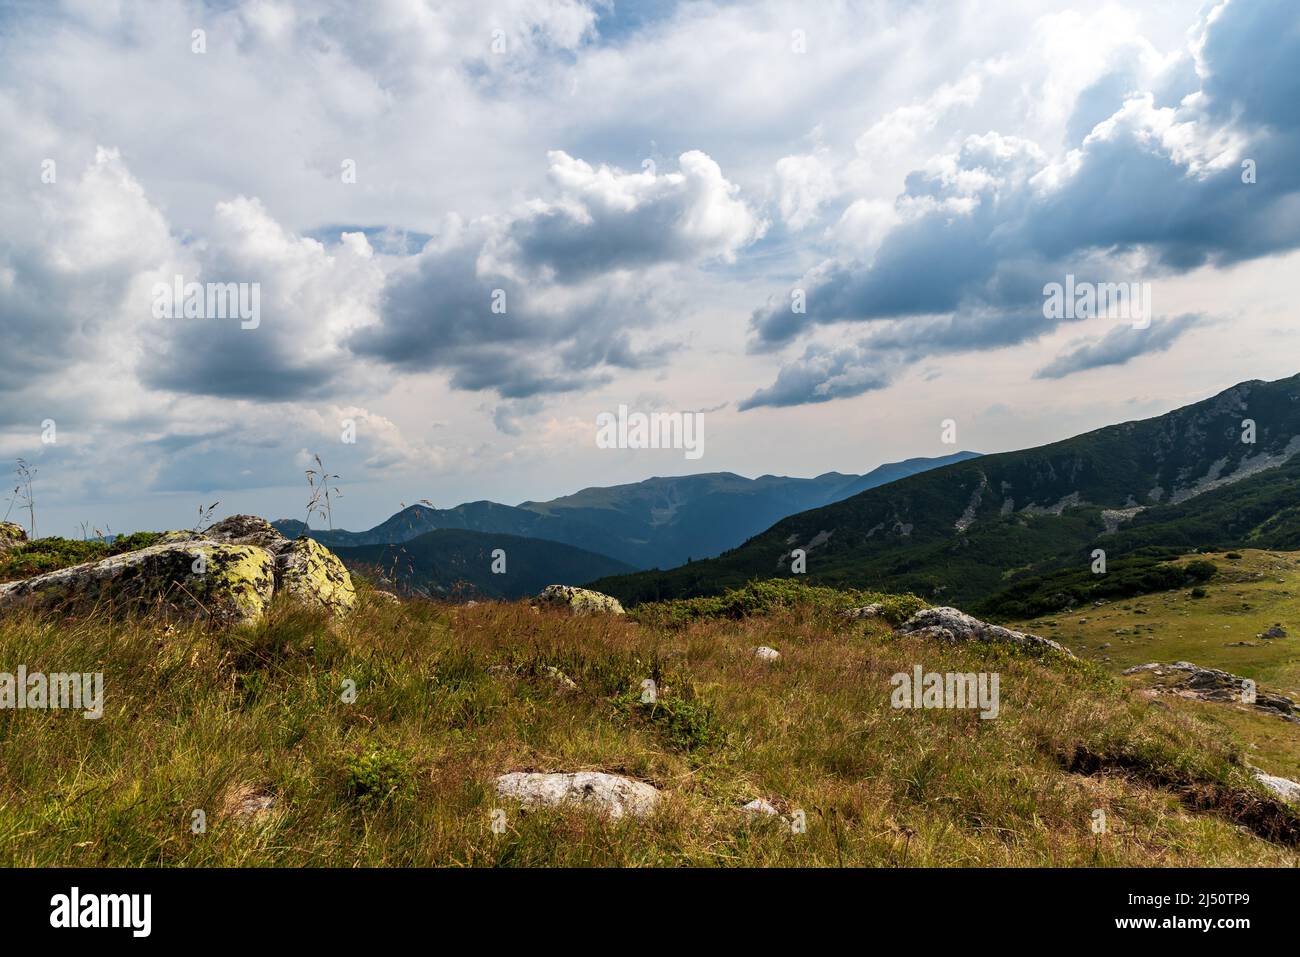 Bergkulisse mit Wiese, Steinen und Hügeln im Hintergrund - Blick über den See Zanoaga in den Bergen von Retezat in Rumänien Stockfoto